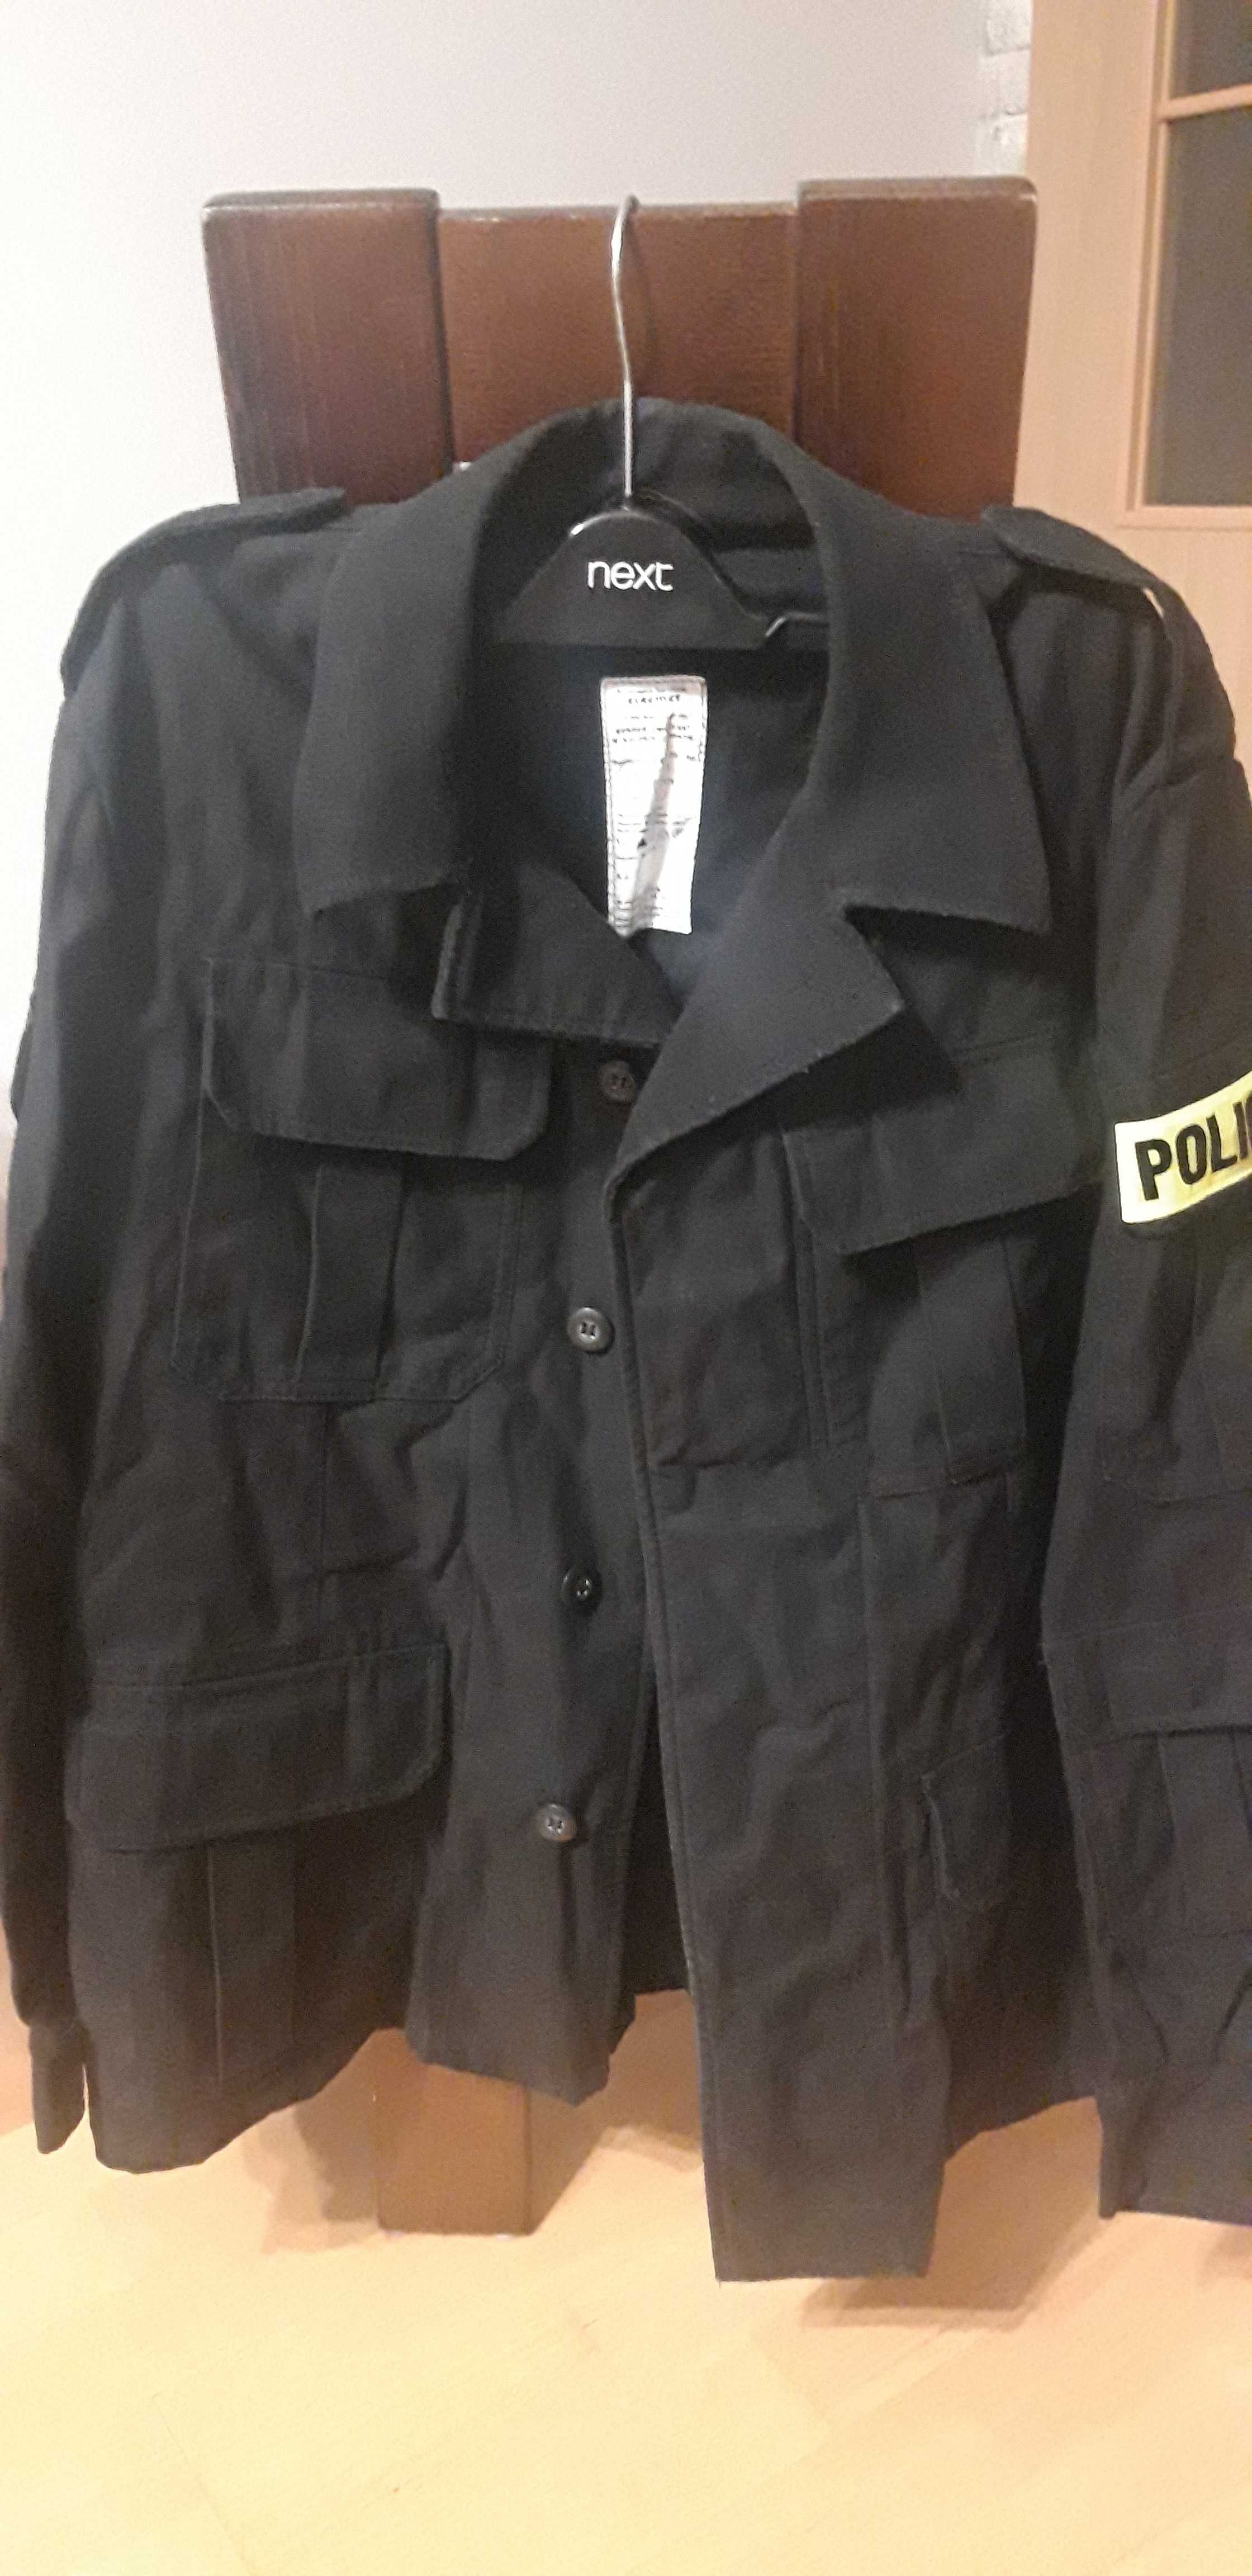 Bluza mundur ćwiczebny czarny policja Moro